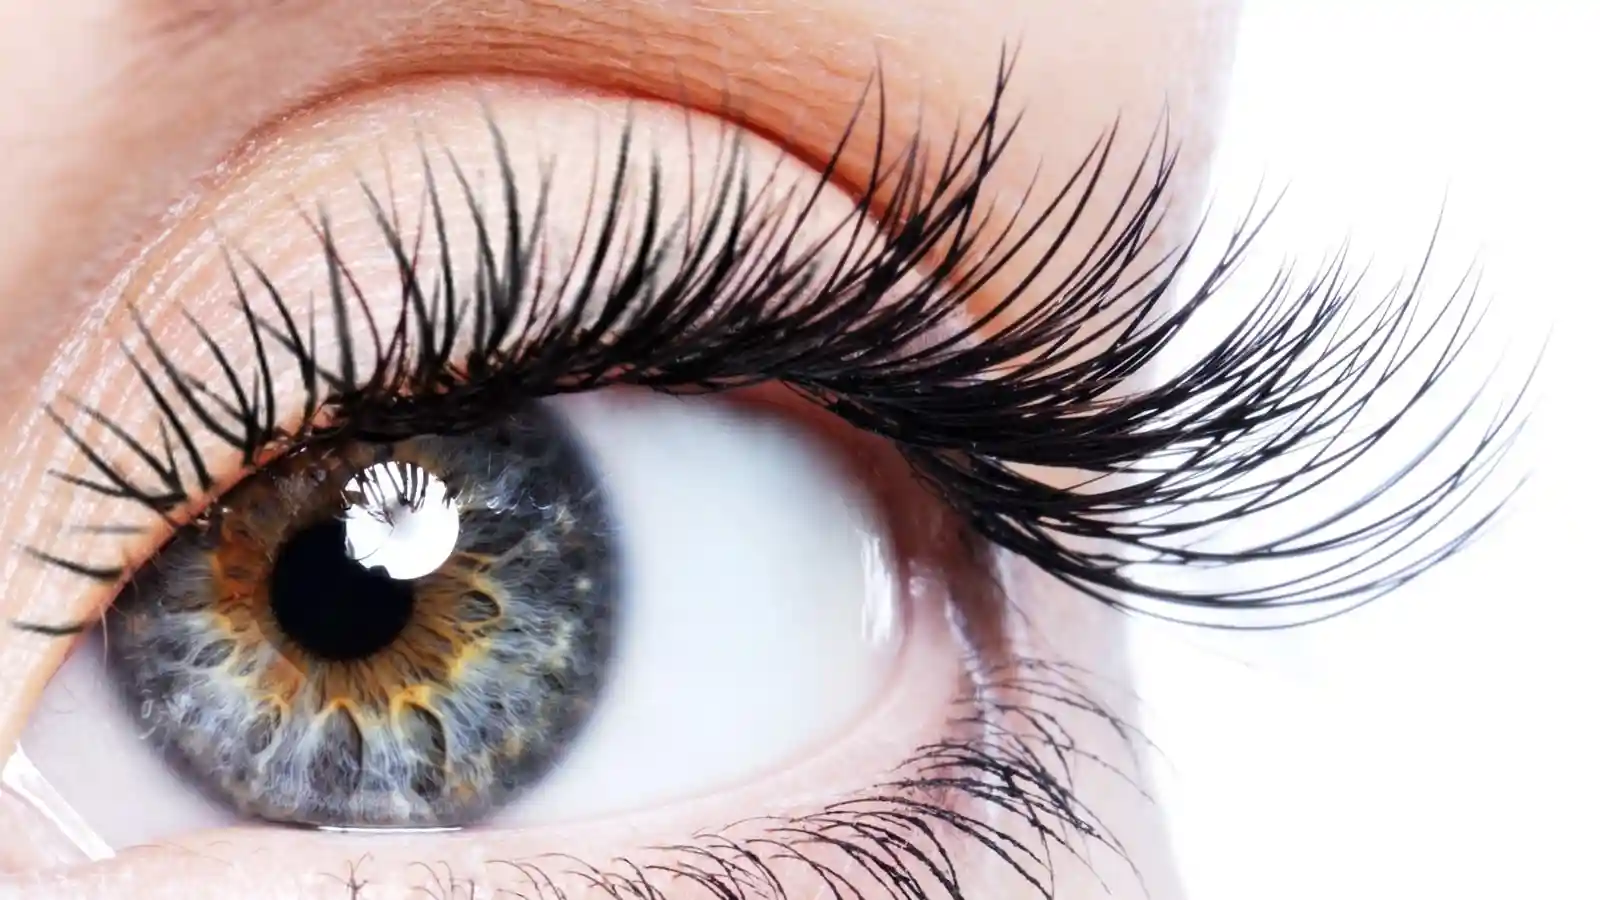 3 نوع کاشت مژه برای زیباتر شدن چشم ها